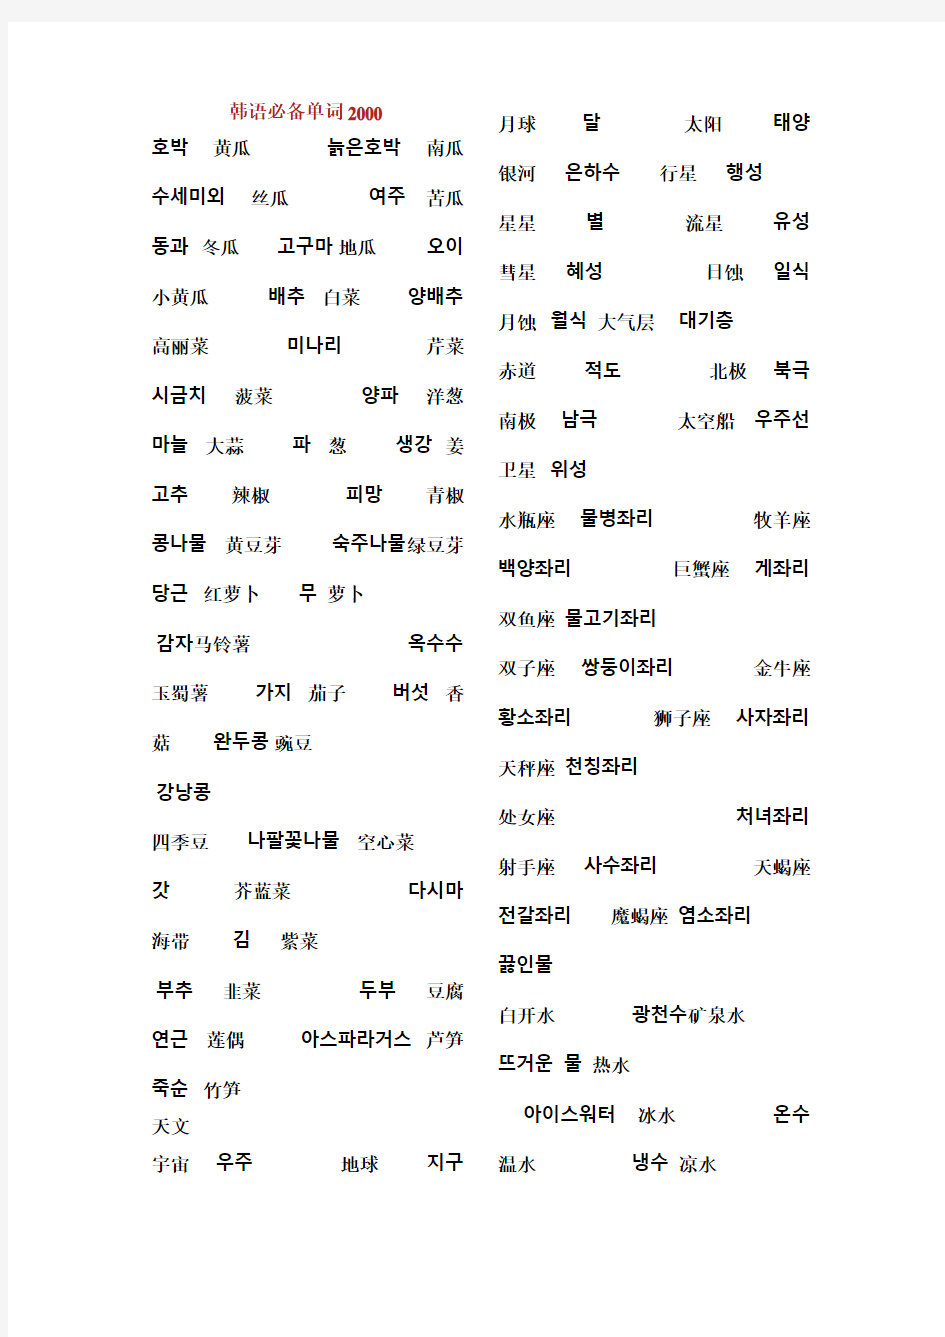 韩语必备的单词学习